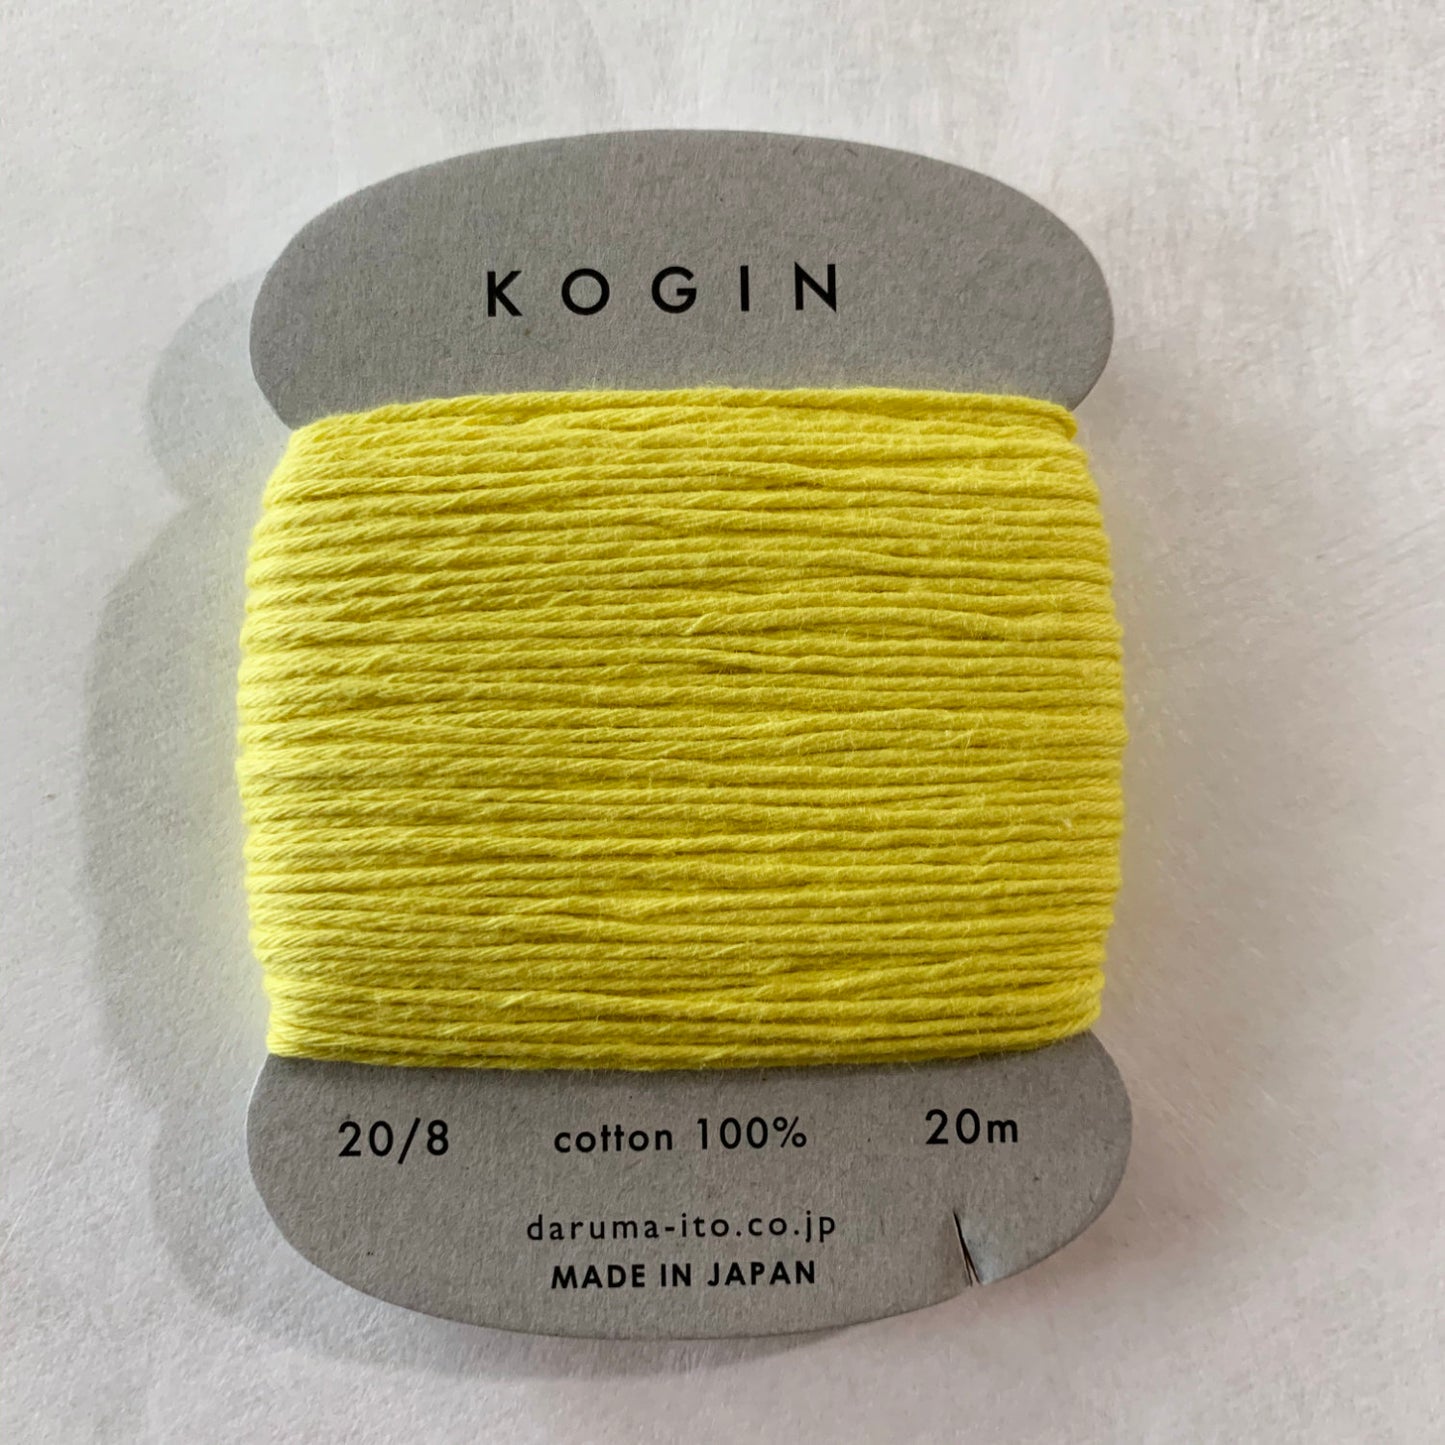 Daruma #9 YELLOW Japanese Cotton KOGIN thread 20 meter skein 20/8